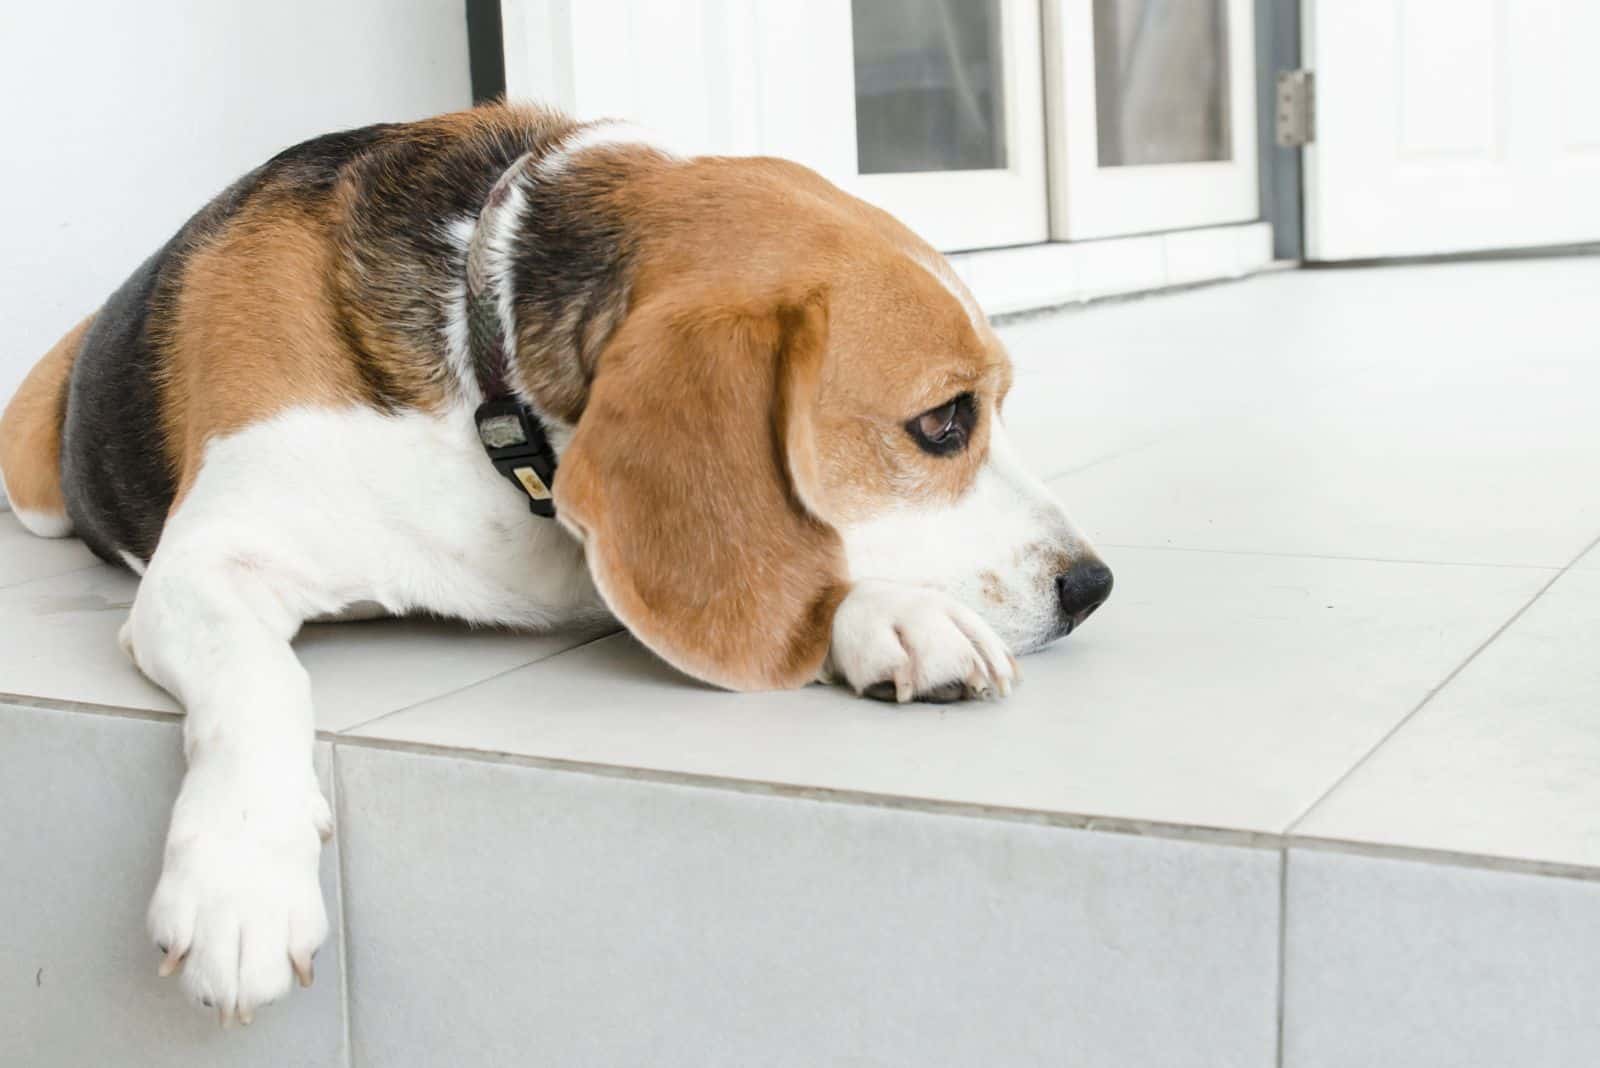 Beagle dog lies on tiles